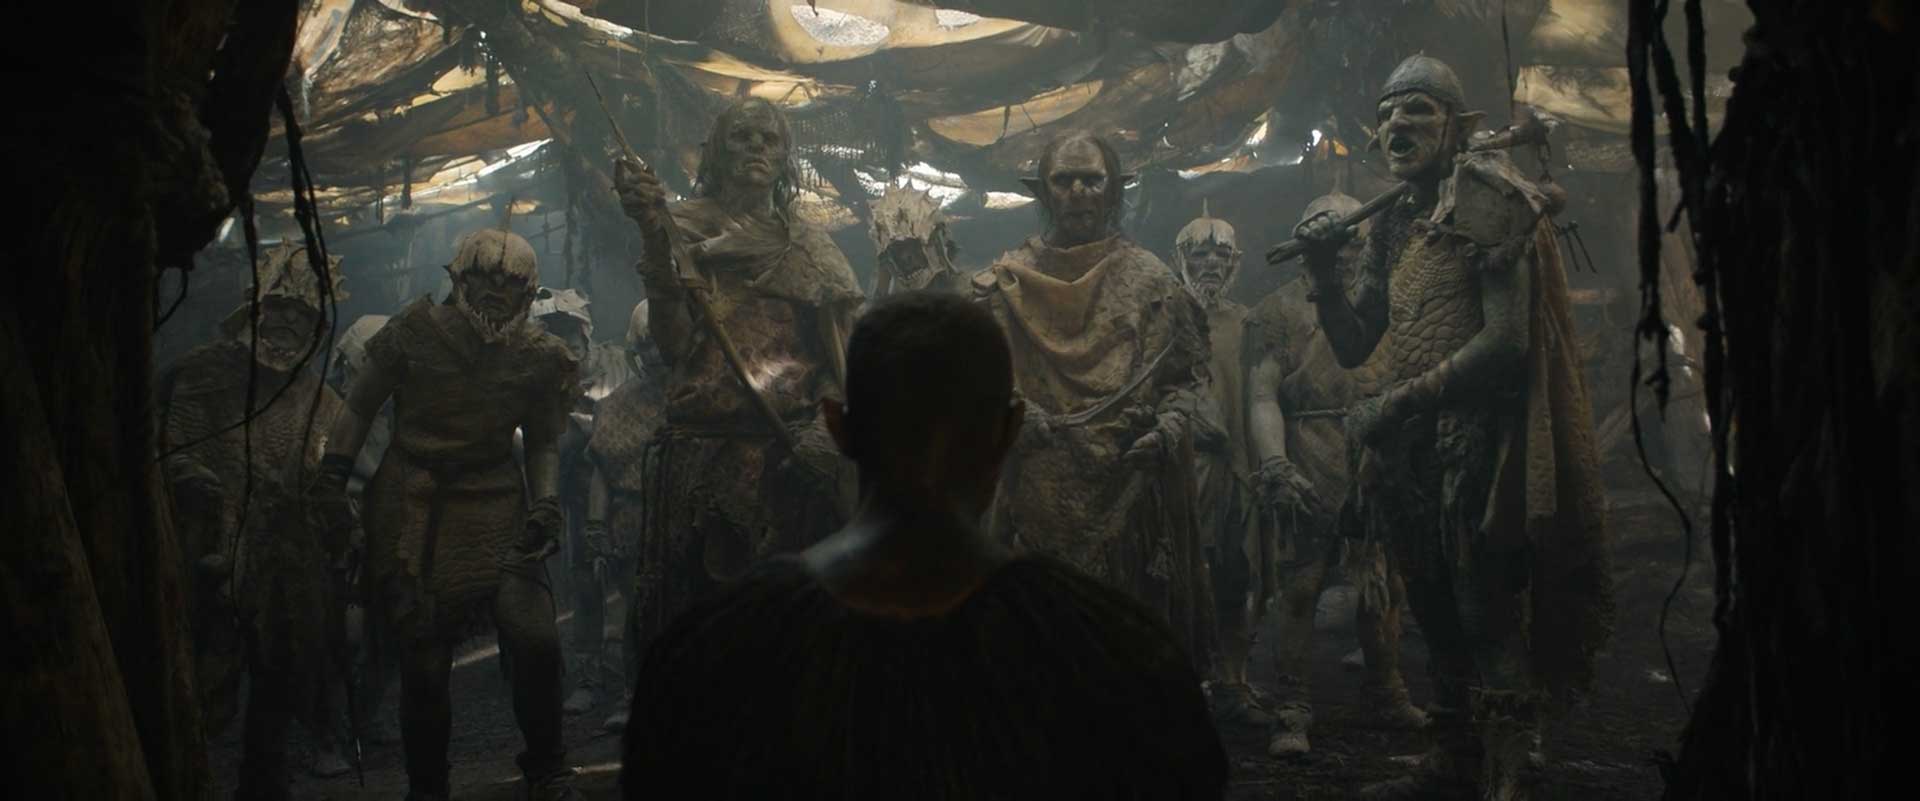 آروندیر در برابر ارک های خشن و پیرو آدار در اپیزود ۴ فصل اول سریال The Lord of the Rings (ارباب حلقه ها)